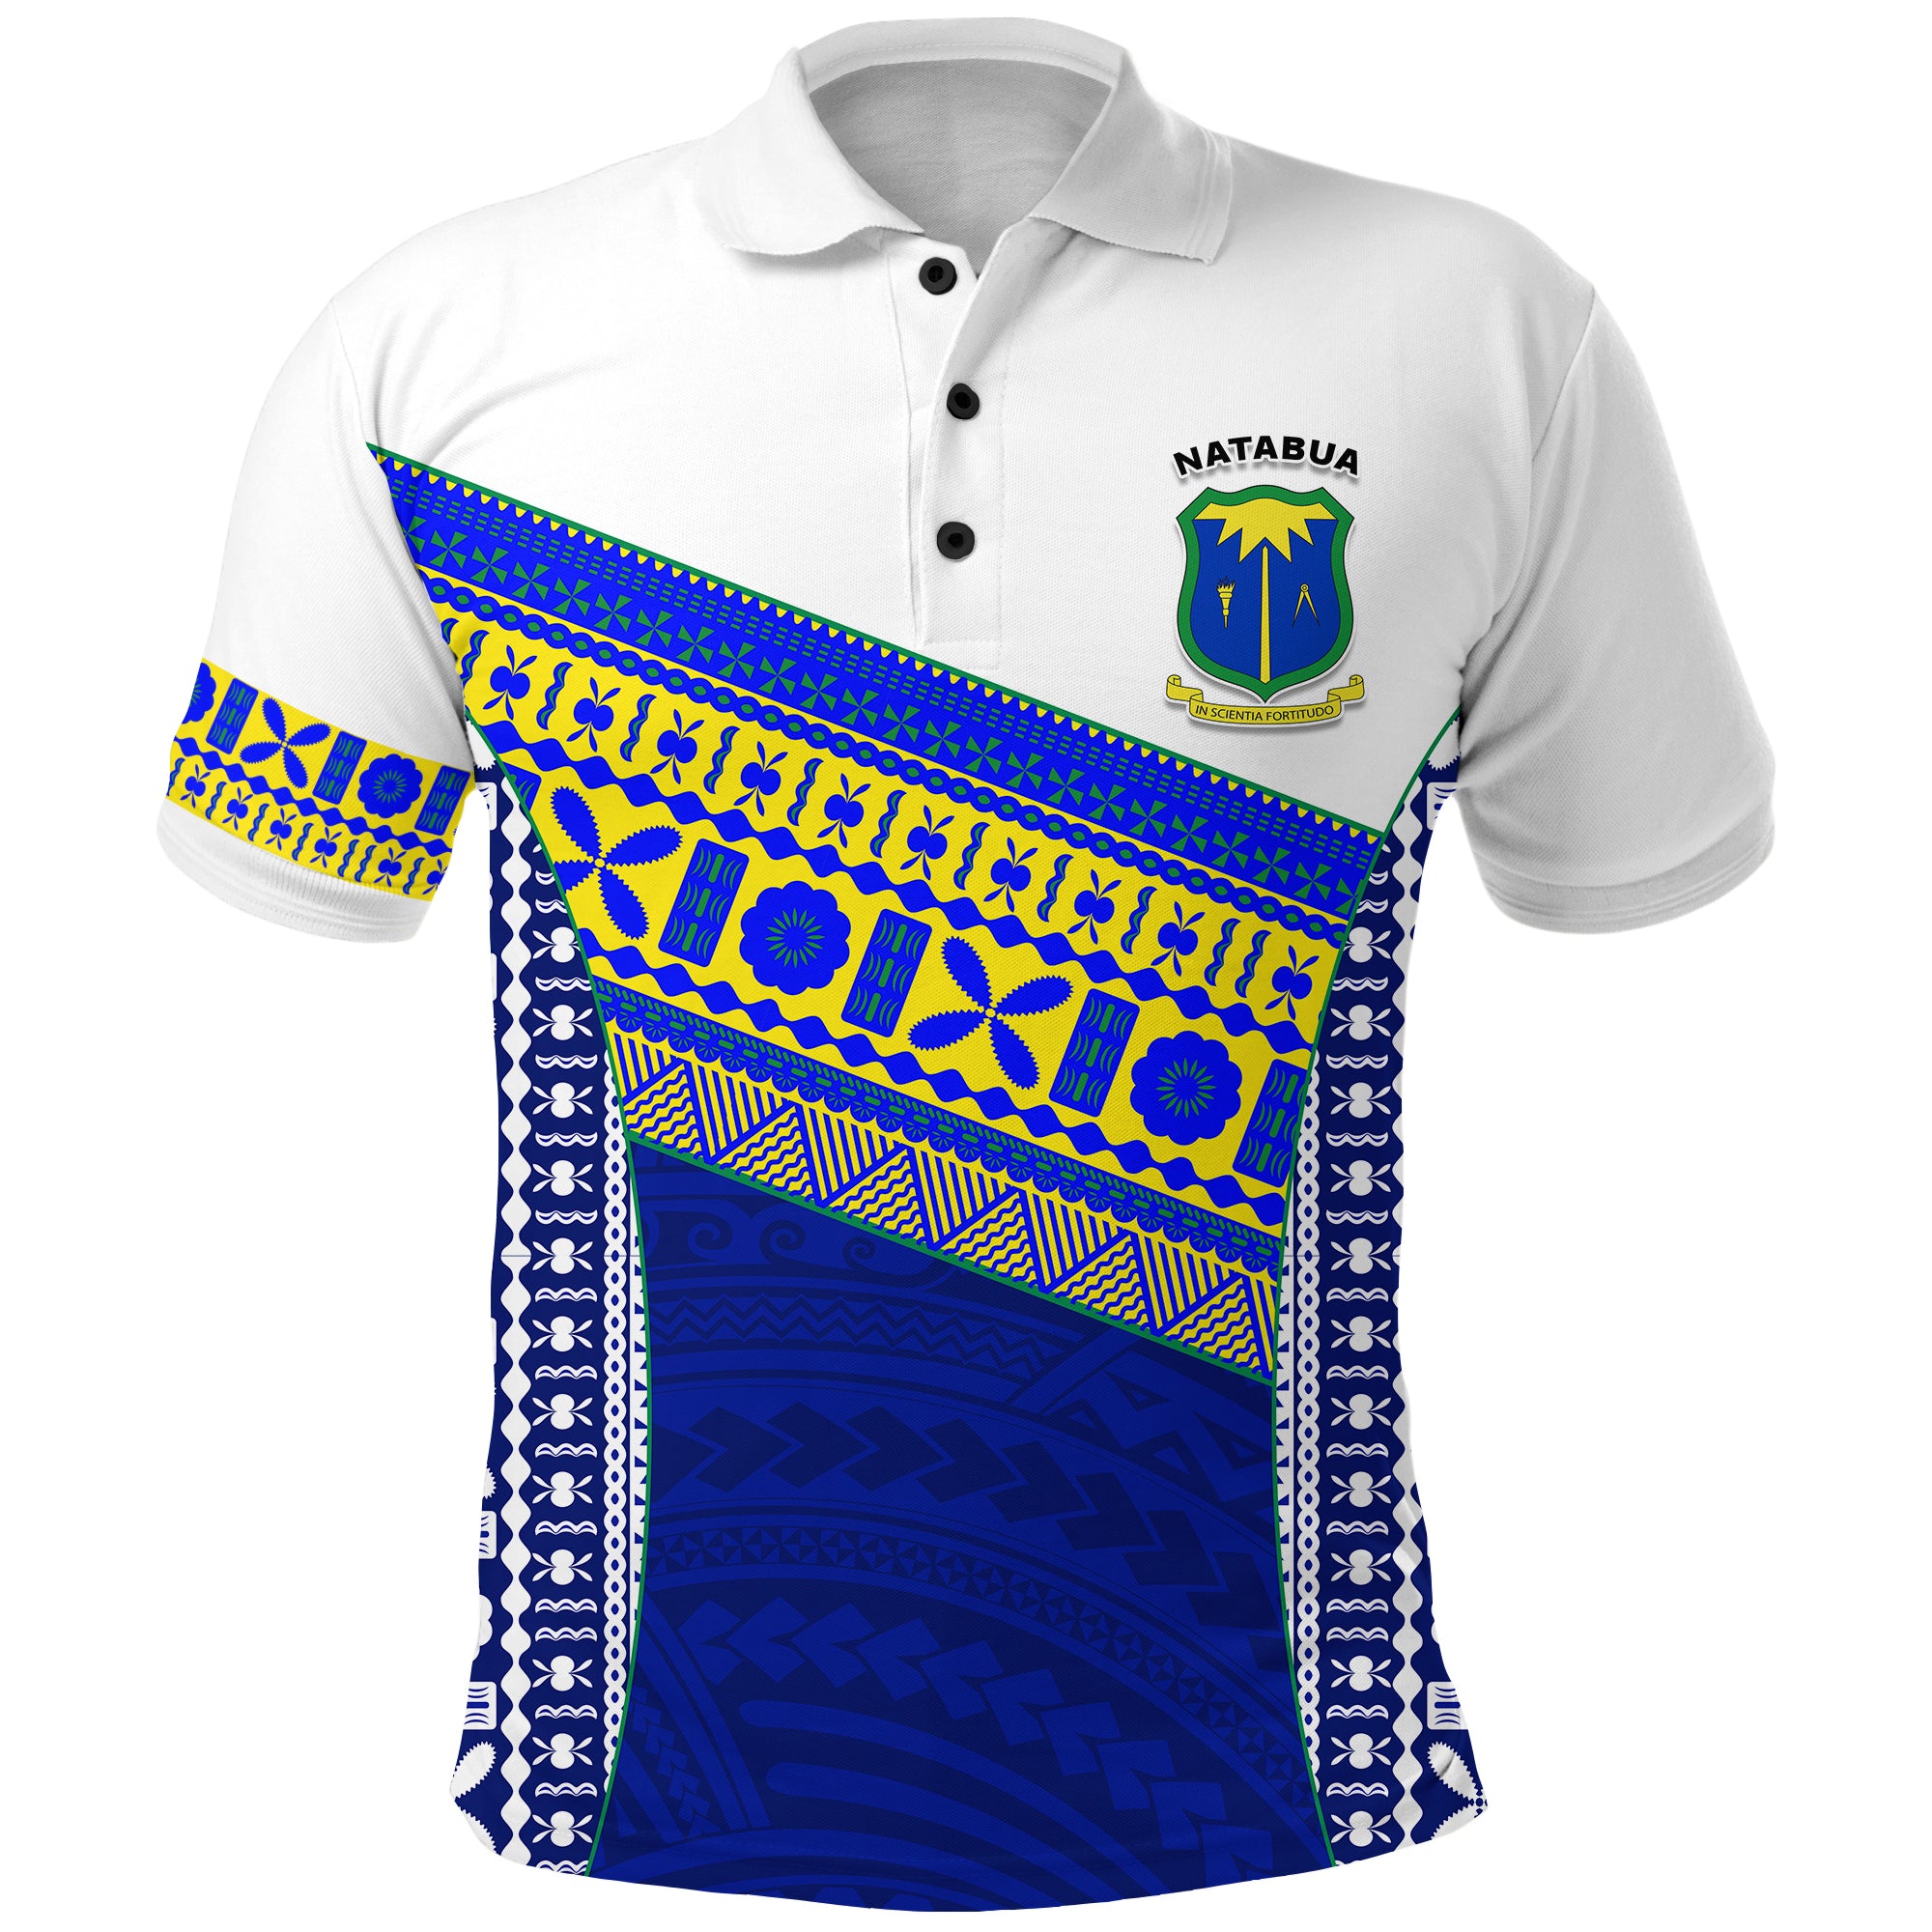 Natabua High School Fiji Polo Shirt NHS Polynesian LT13 Unisex Blue - Polynesian Pride